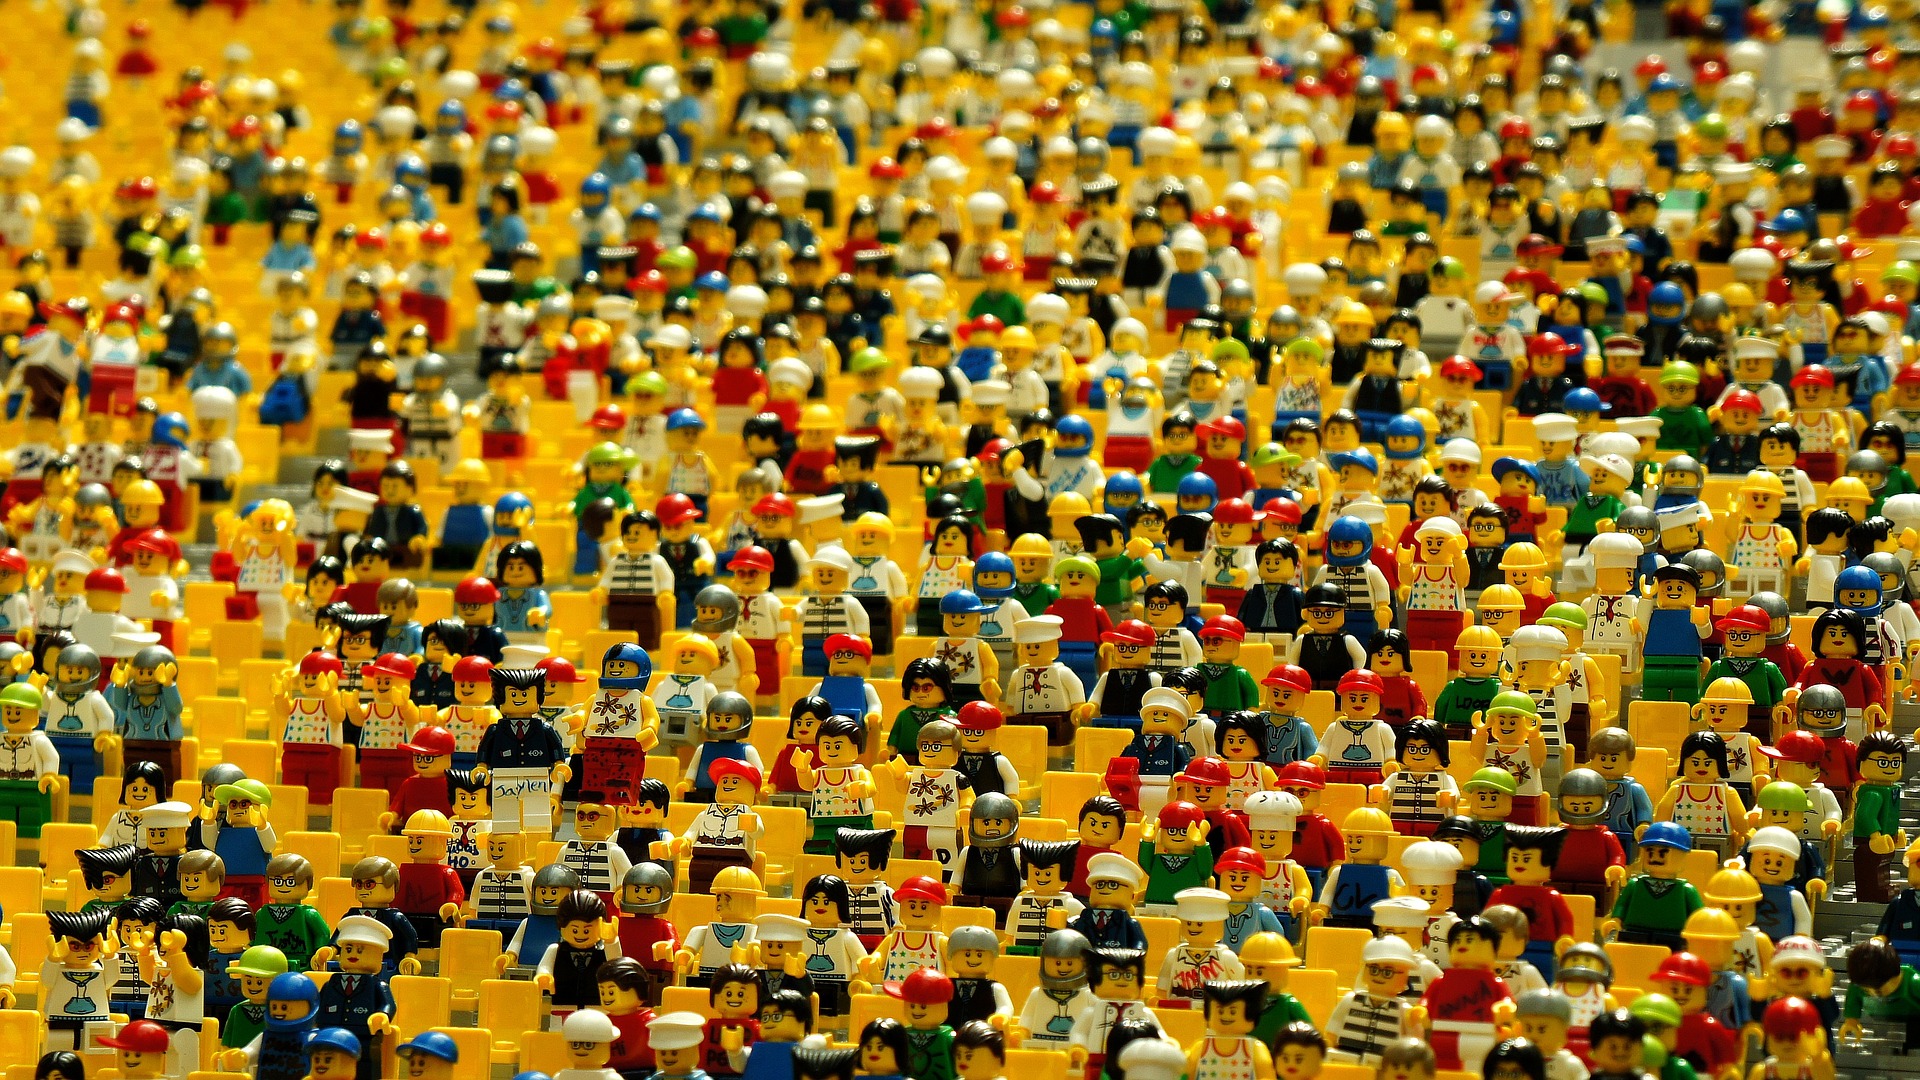 Des centaines de bonhommes lego créant une foule